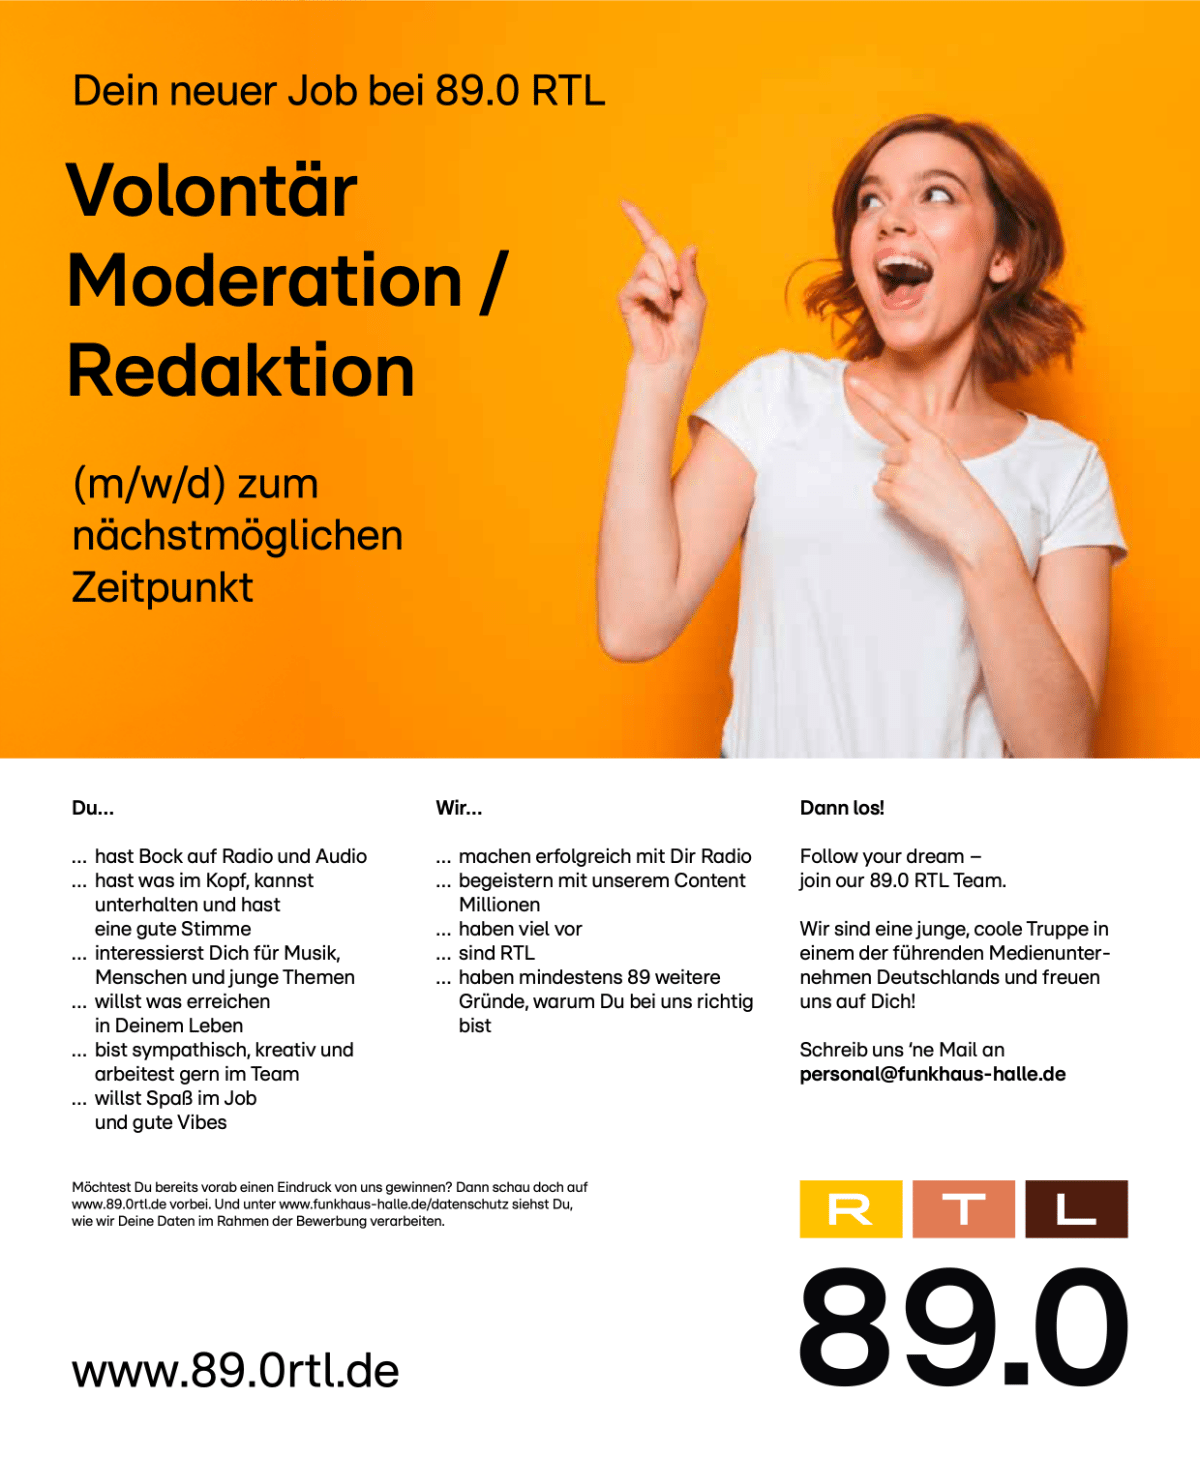 89.0 RTL sucht zum nächstmöglichen Zeitpunkt eine/n Volontär/in Moderation / Redaktion (m/w/d) am Standort Halle in Sachsen-Anhalt.